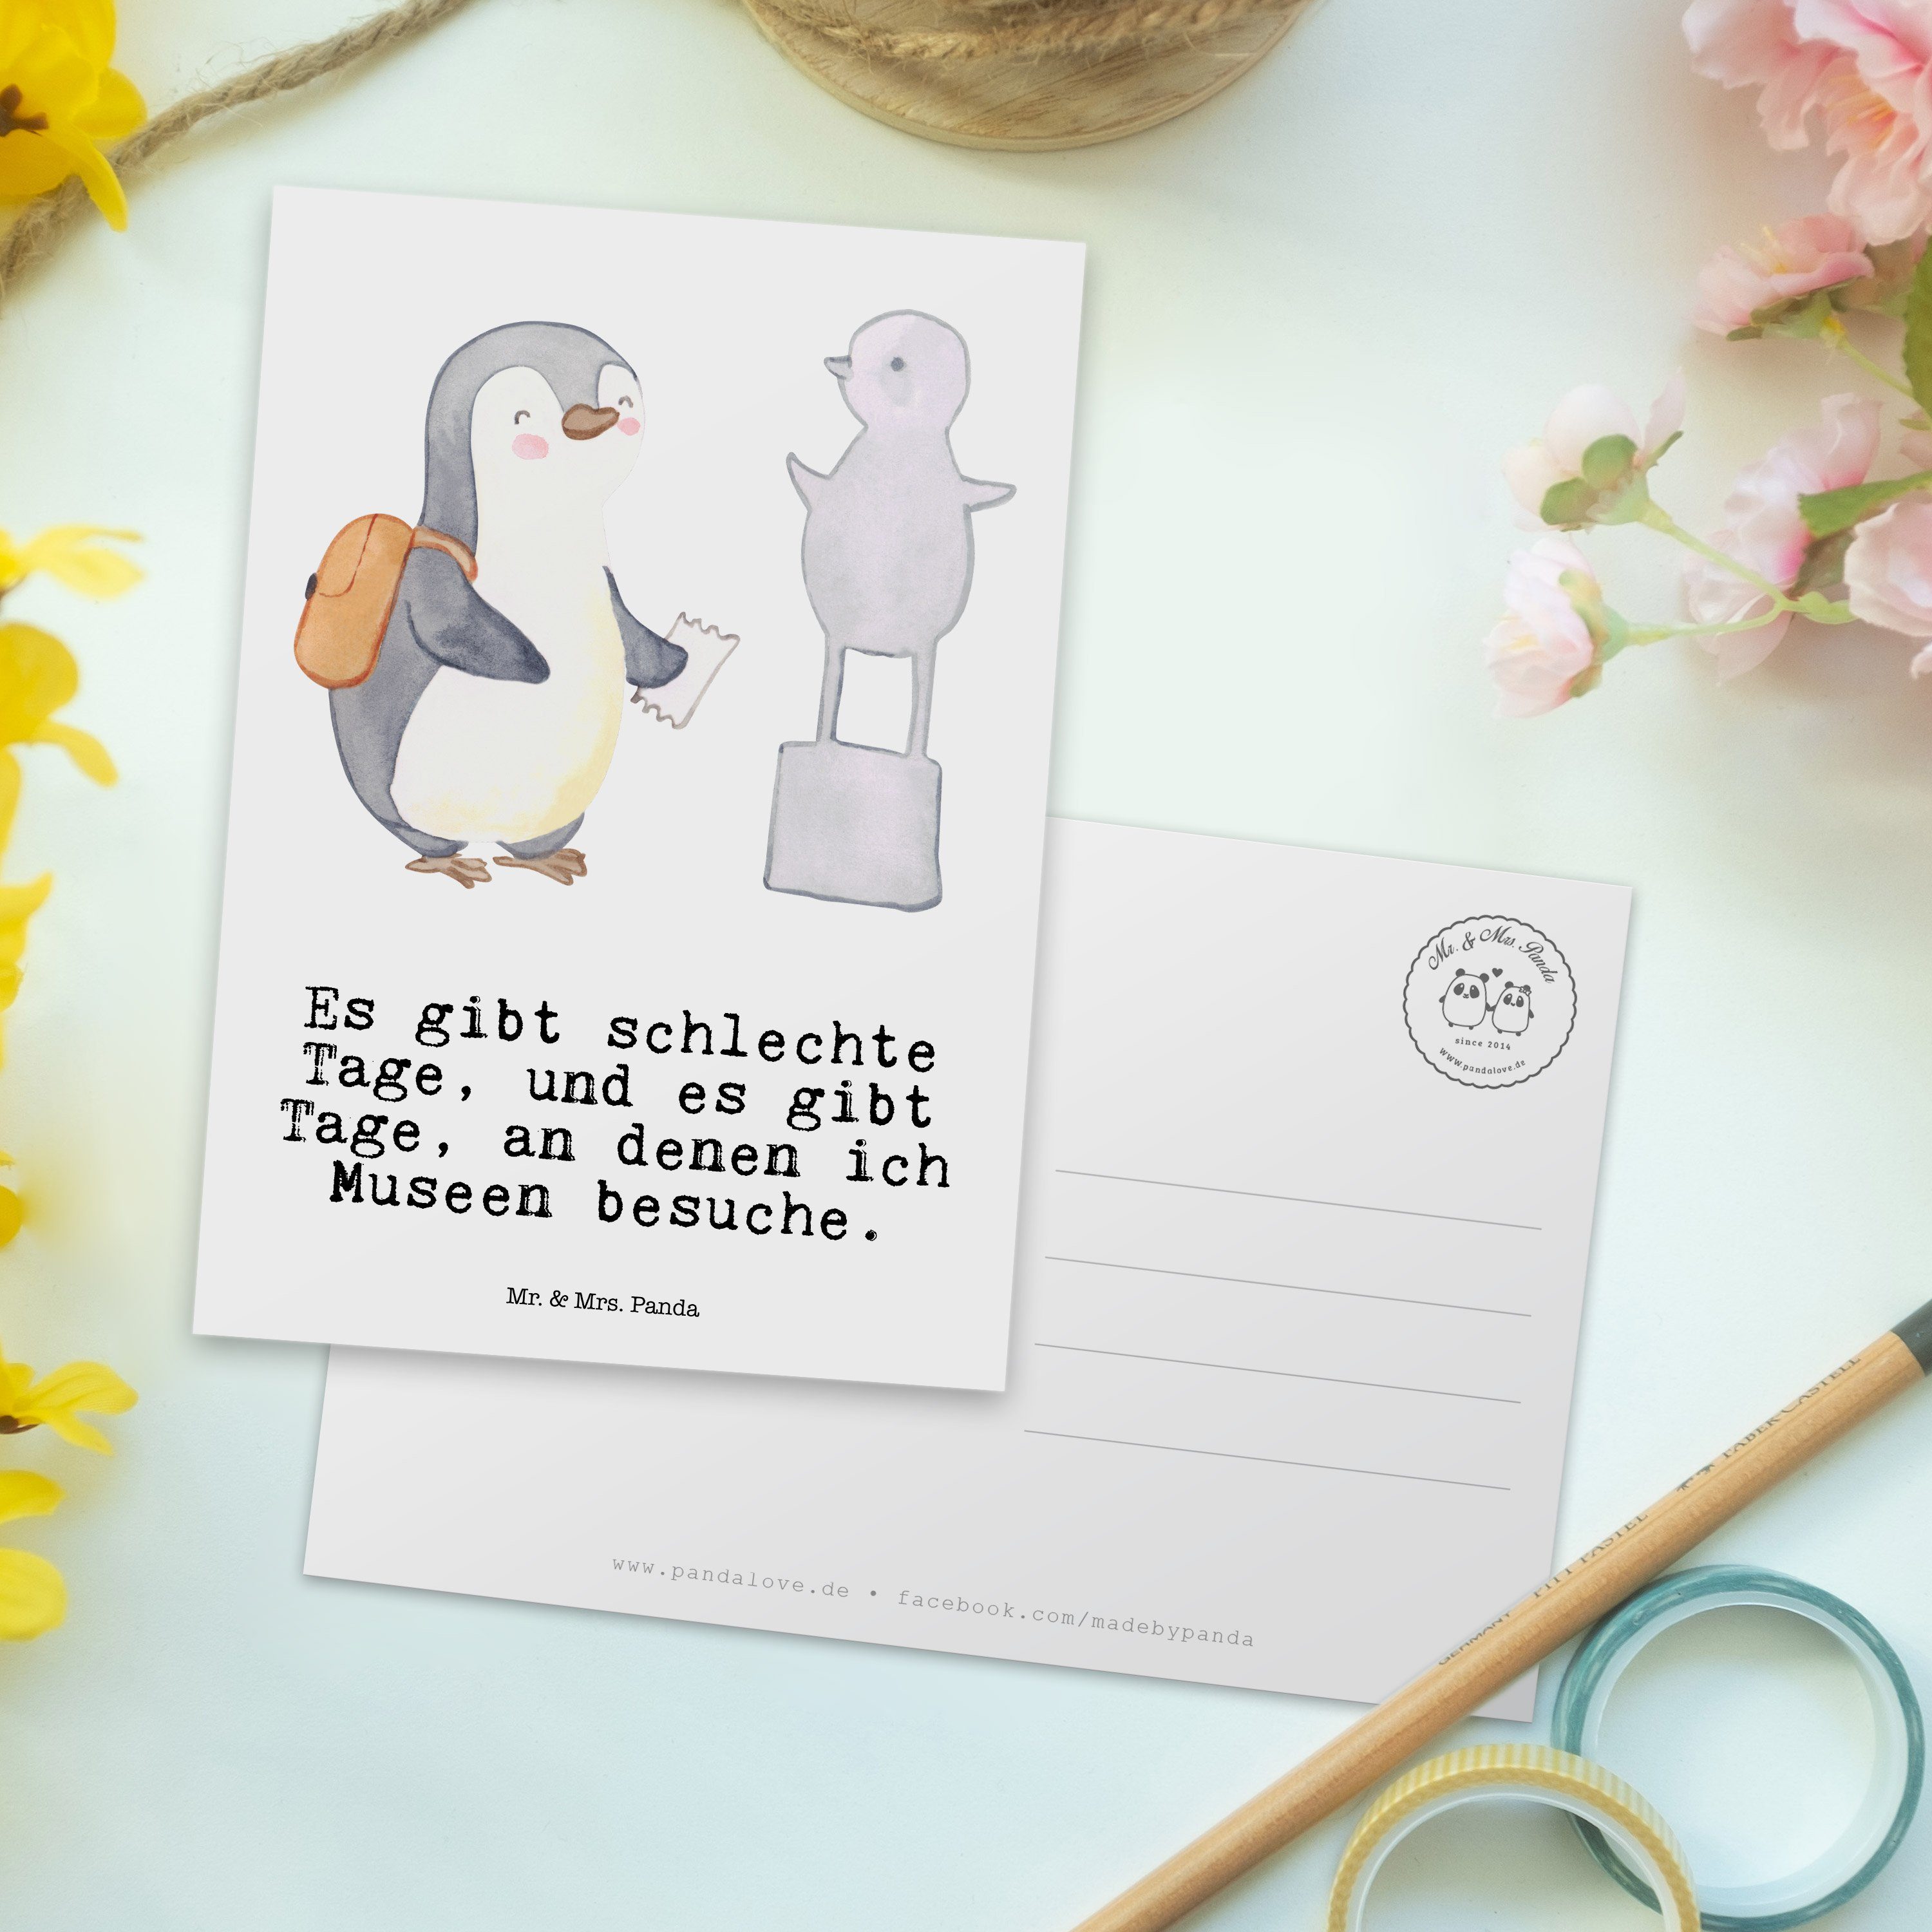 Mr. & Panda Geschenk, Auszeichnung, Mrs. Weiß Postkarte besuchen Museum - Pinguin - Museen Tage